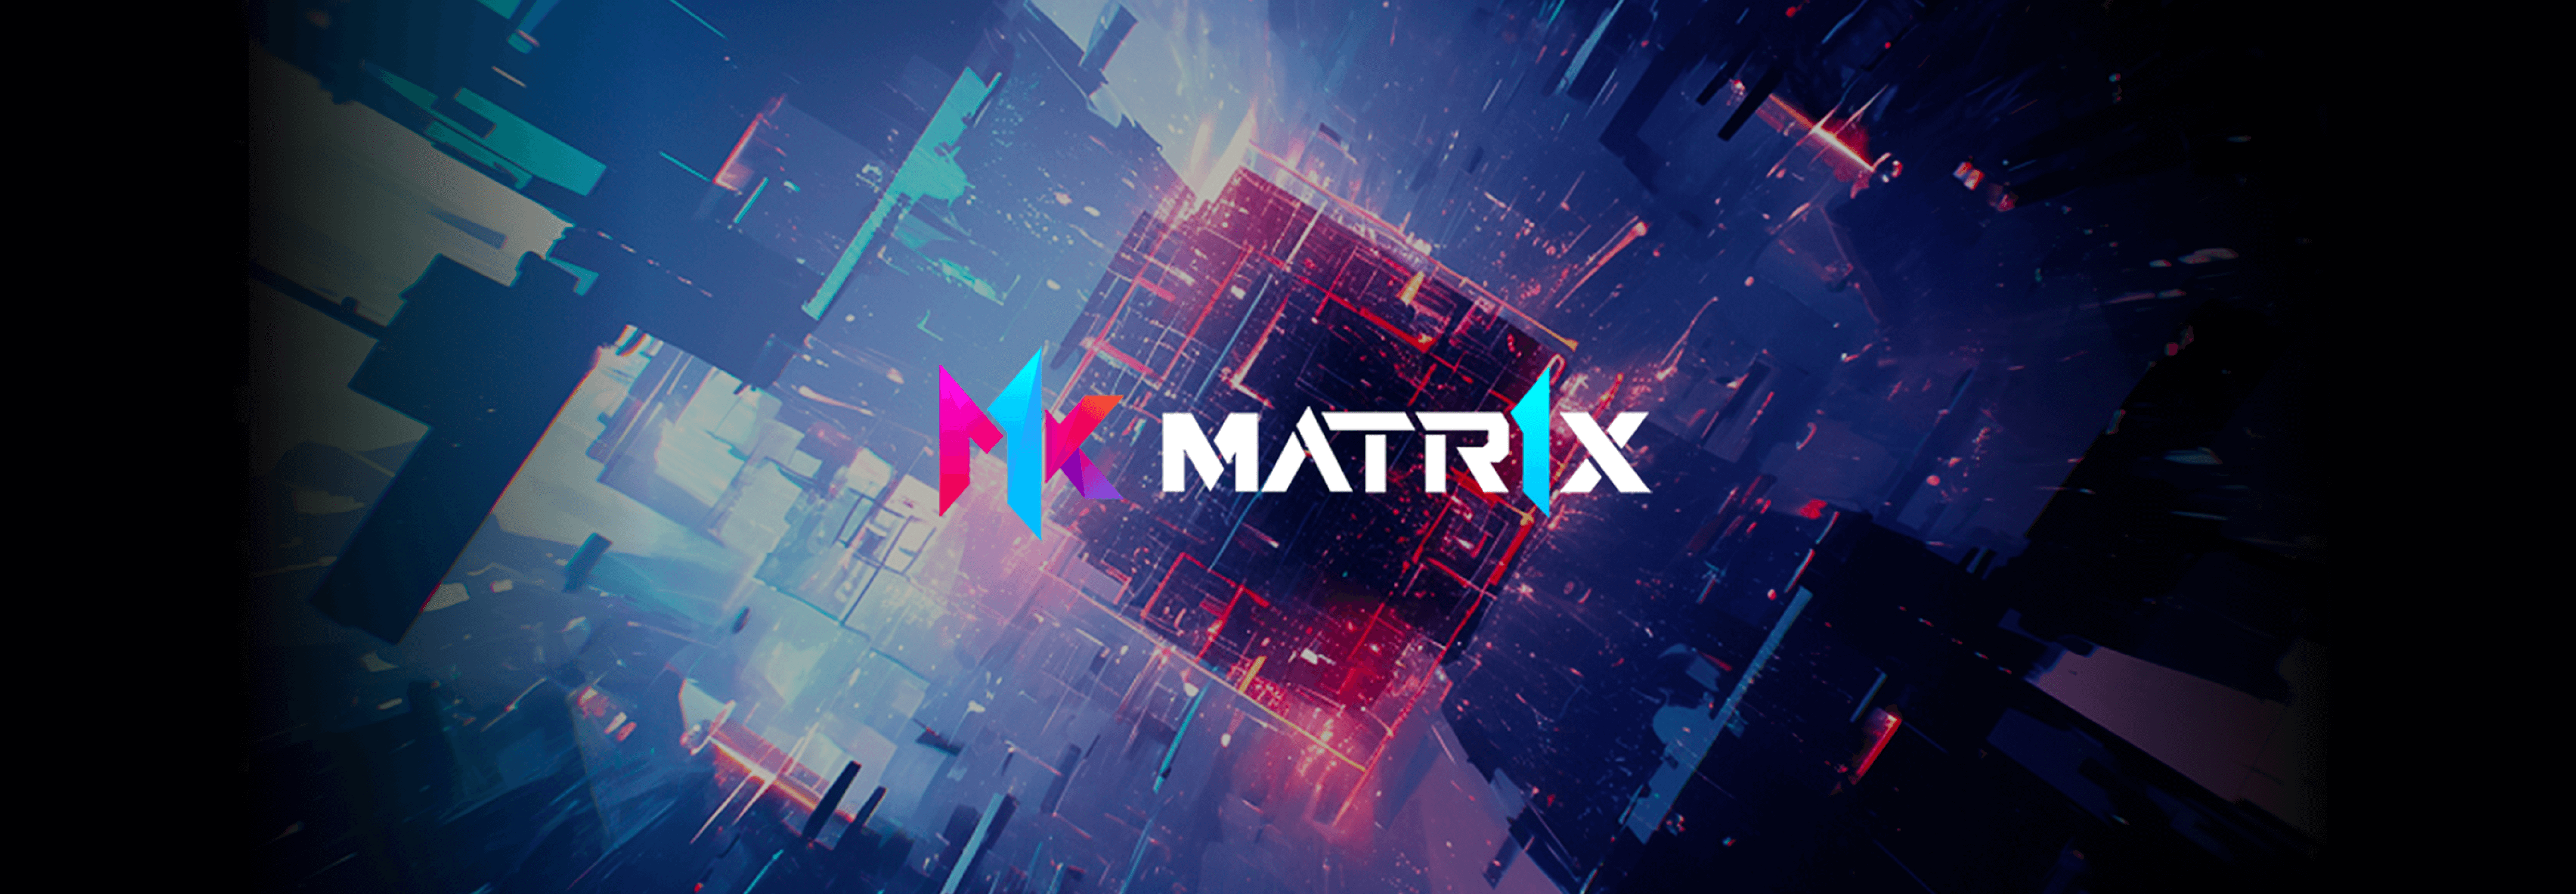 Matr1x